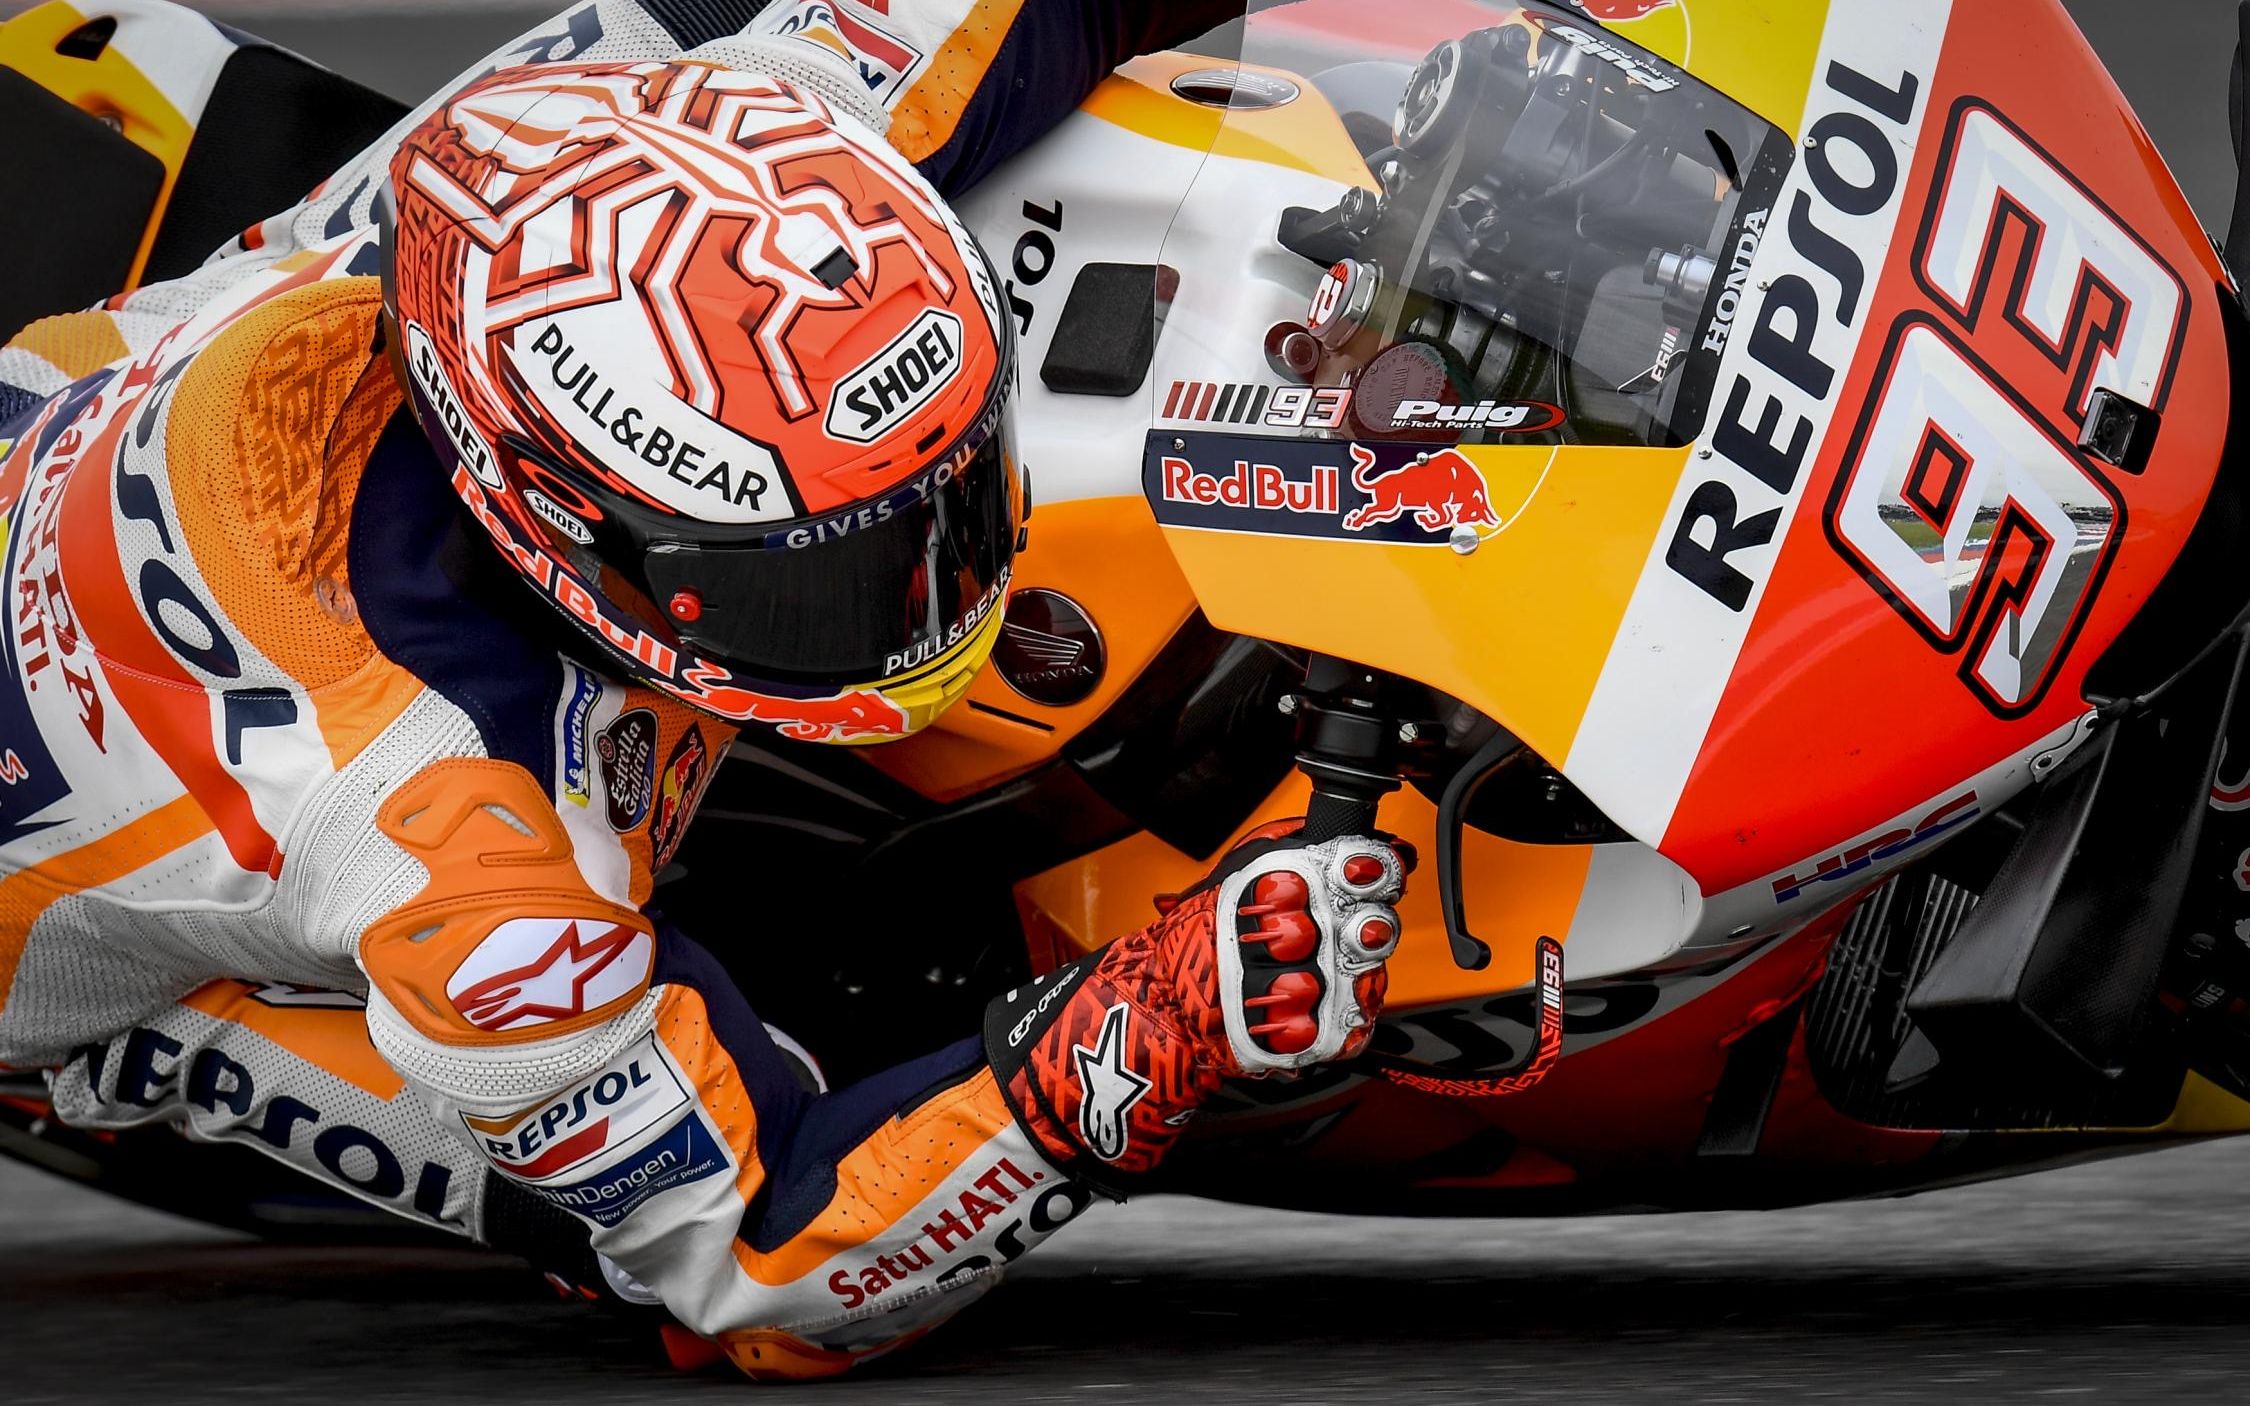 马克·马奎斯】 2019赛季__#无极#__ Marc Marquez-Unlimited【MotoGP™纪录片】 中字|1080p】